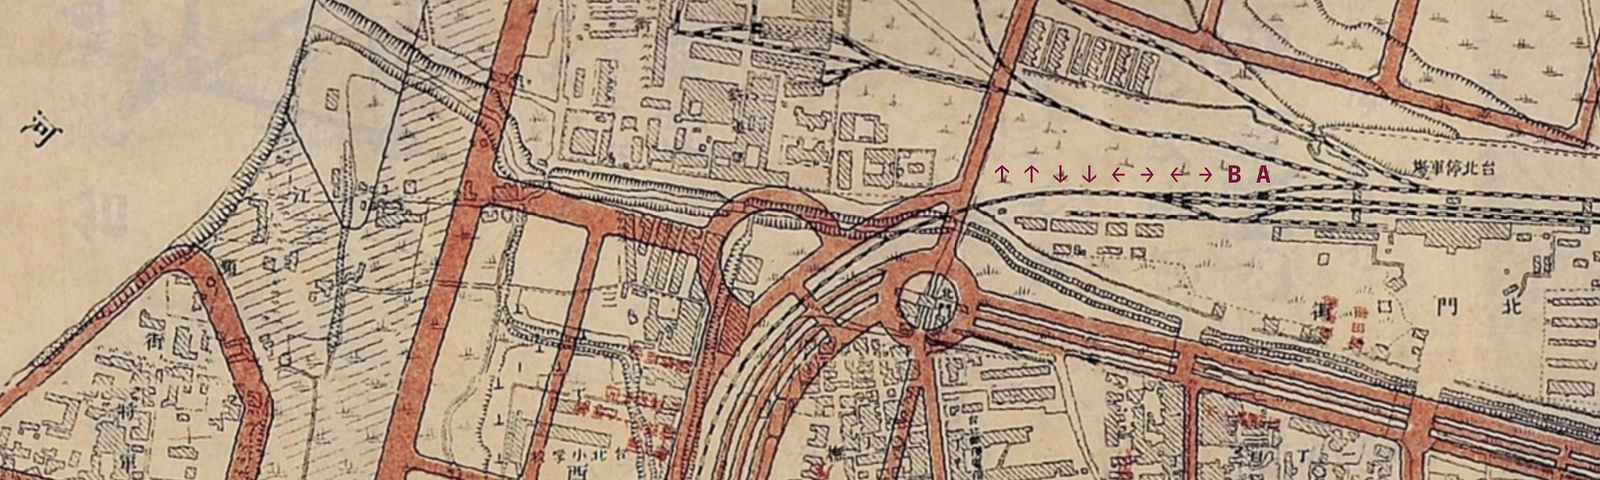 公元 1907 時的臺北西區門戶計畫地圖比對 (Taipei West District Plan Map, CE 1907)